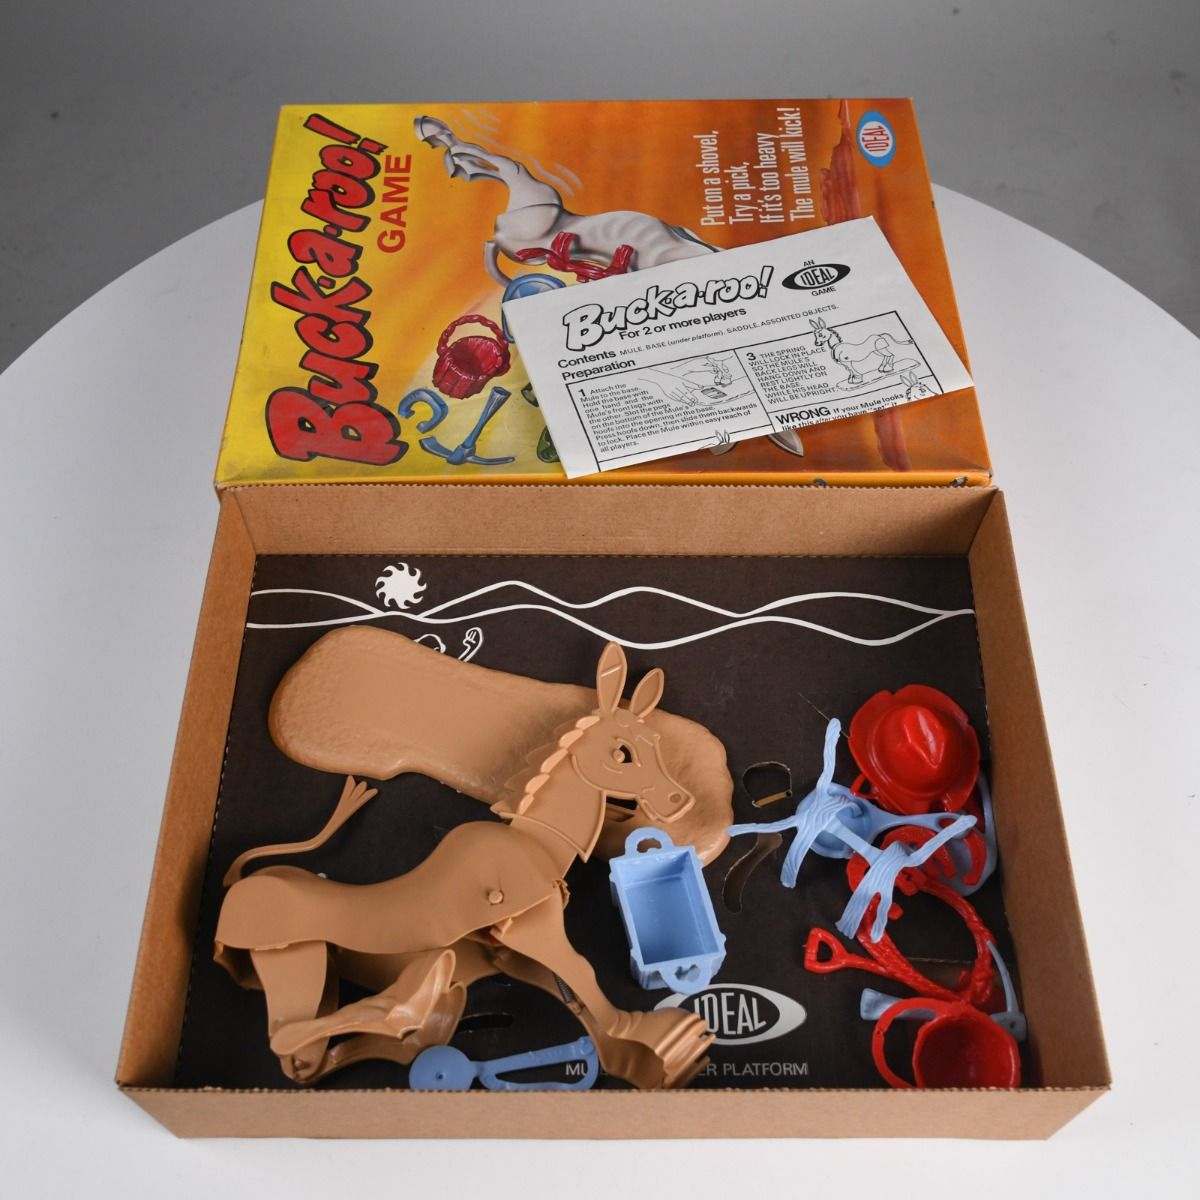 'Buckaroo' Original 1970 Version Board Game